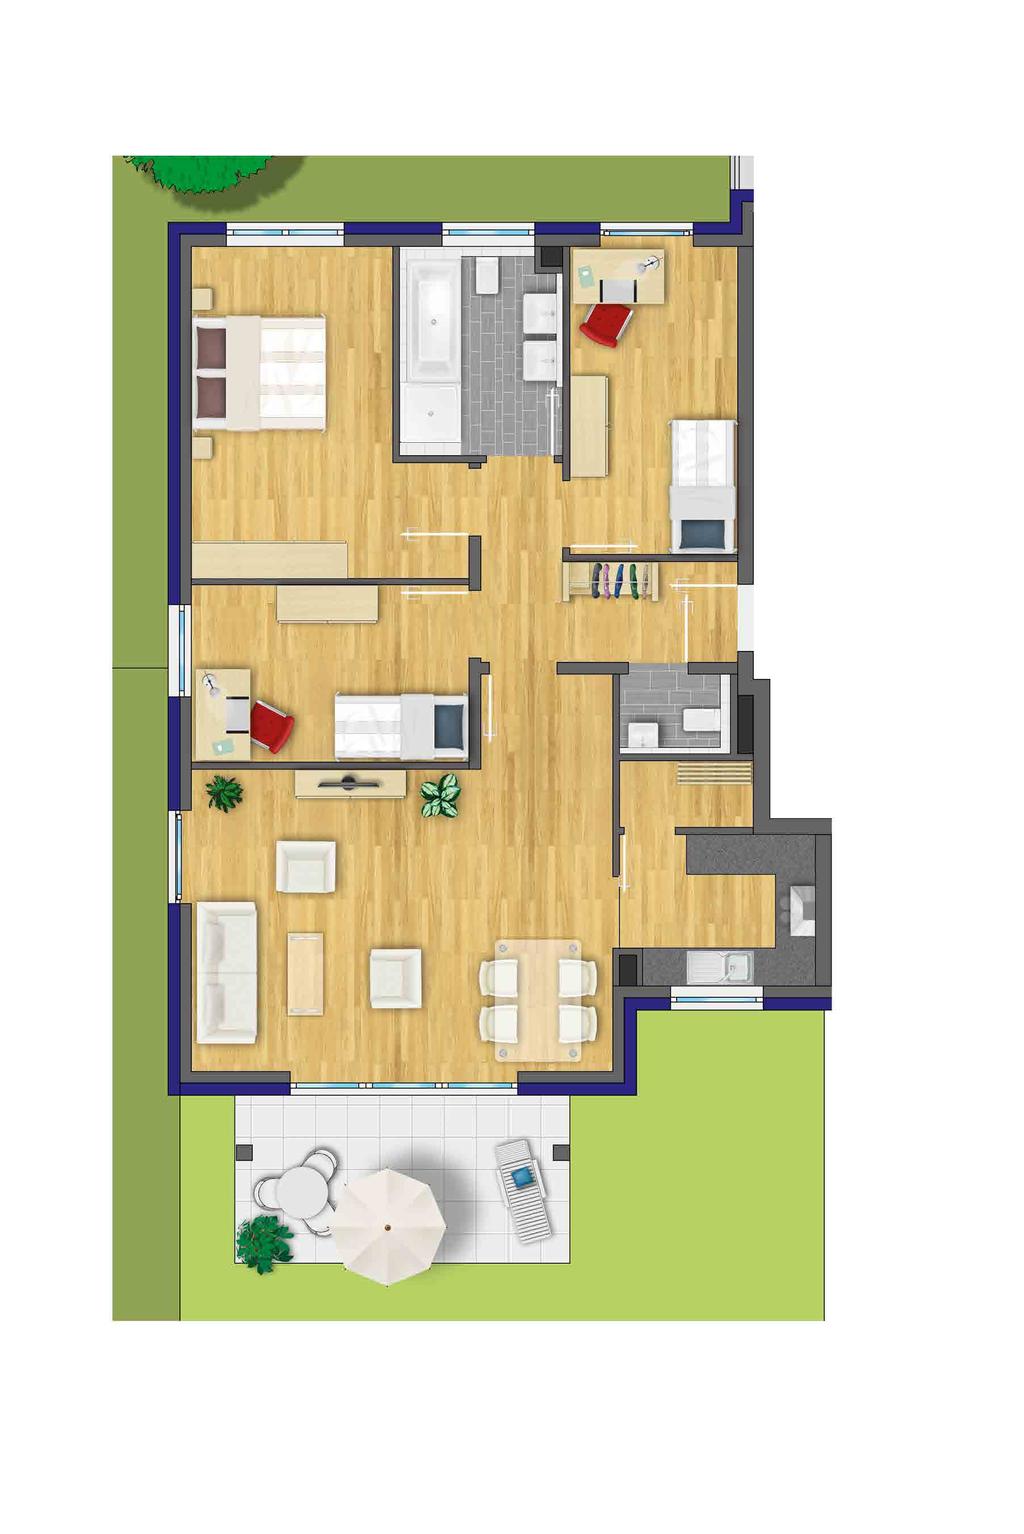 Zimmer 1 chlafen Zimmer 2 C ohnen Küche Balkon 4-Zimmer-ohnung ohnung B2, B4, B6 EG bis 2.